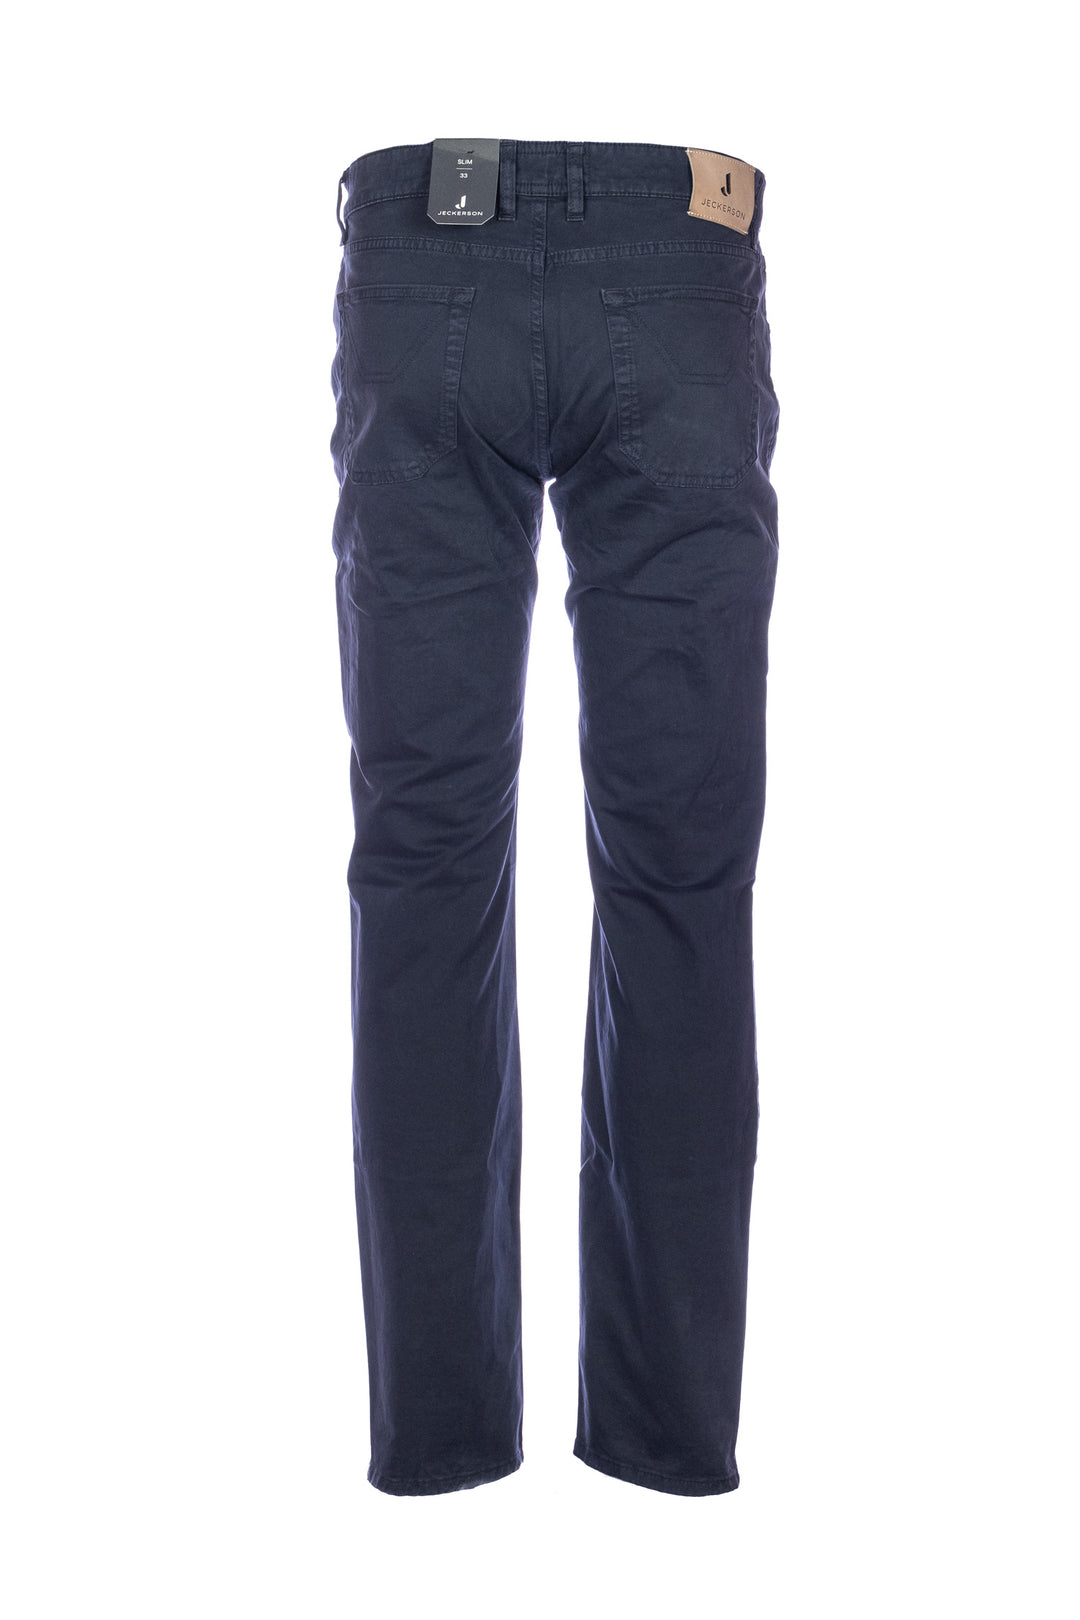 JECKERSON Pantalone slim 5 tasche “JOHN” blu scuro in gabardina di cotone stretch con toppe - Mancinelli 1954